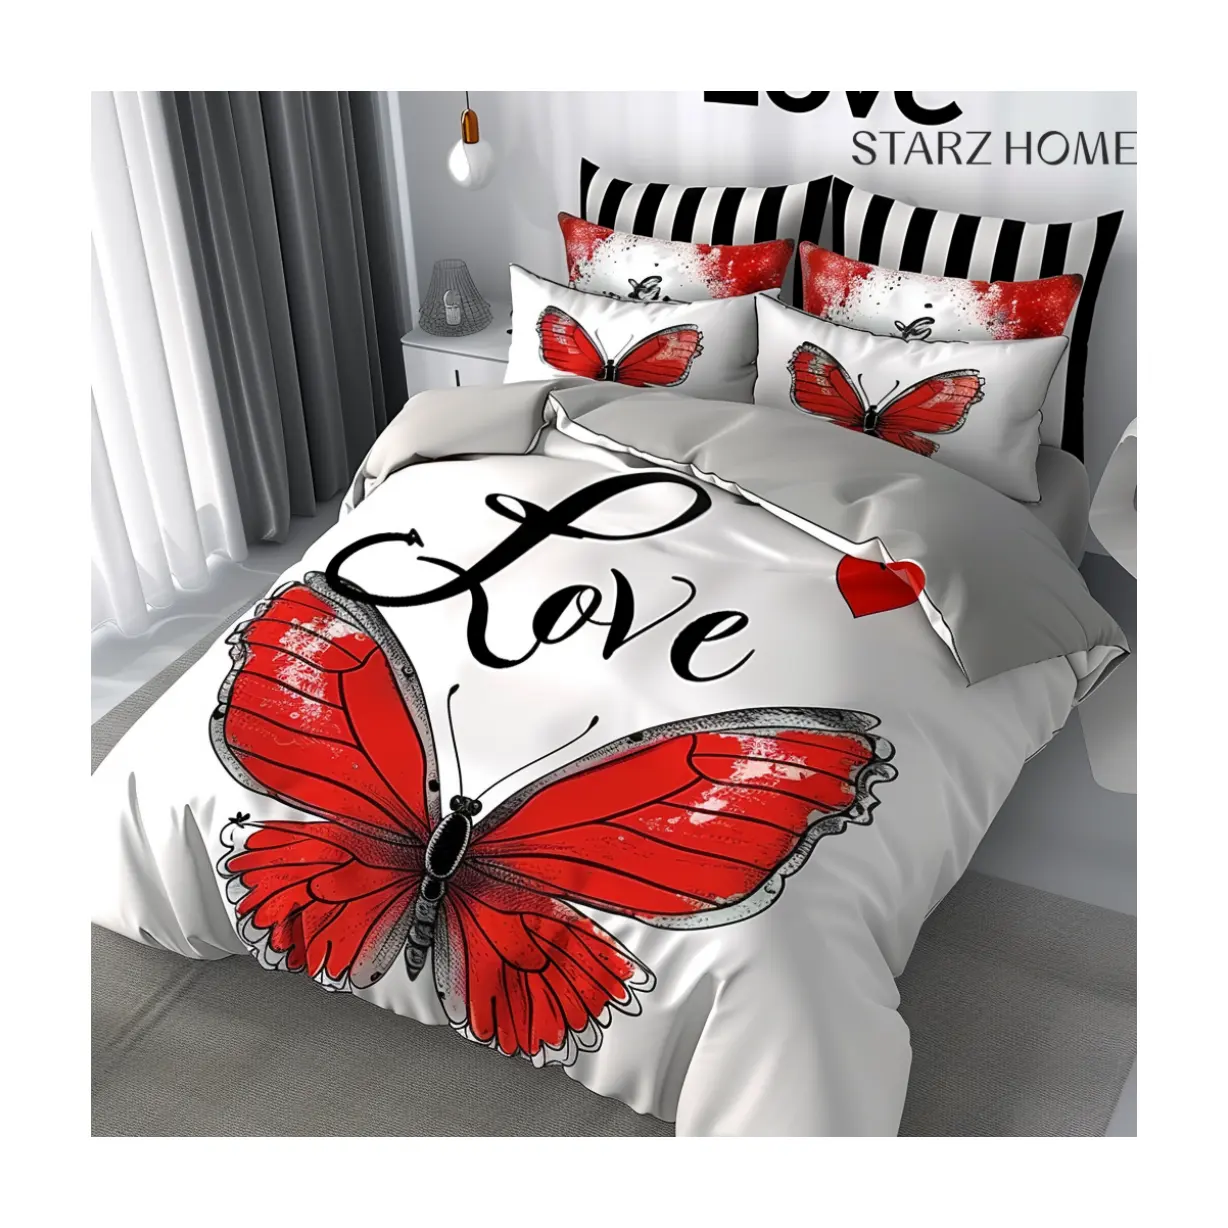 STARZ casa all'ingrosso casa farfalla a buon mercato lenzuola Hotel designer piumino biancheria da letto di lusso in cotone